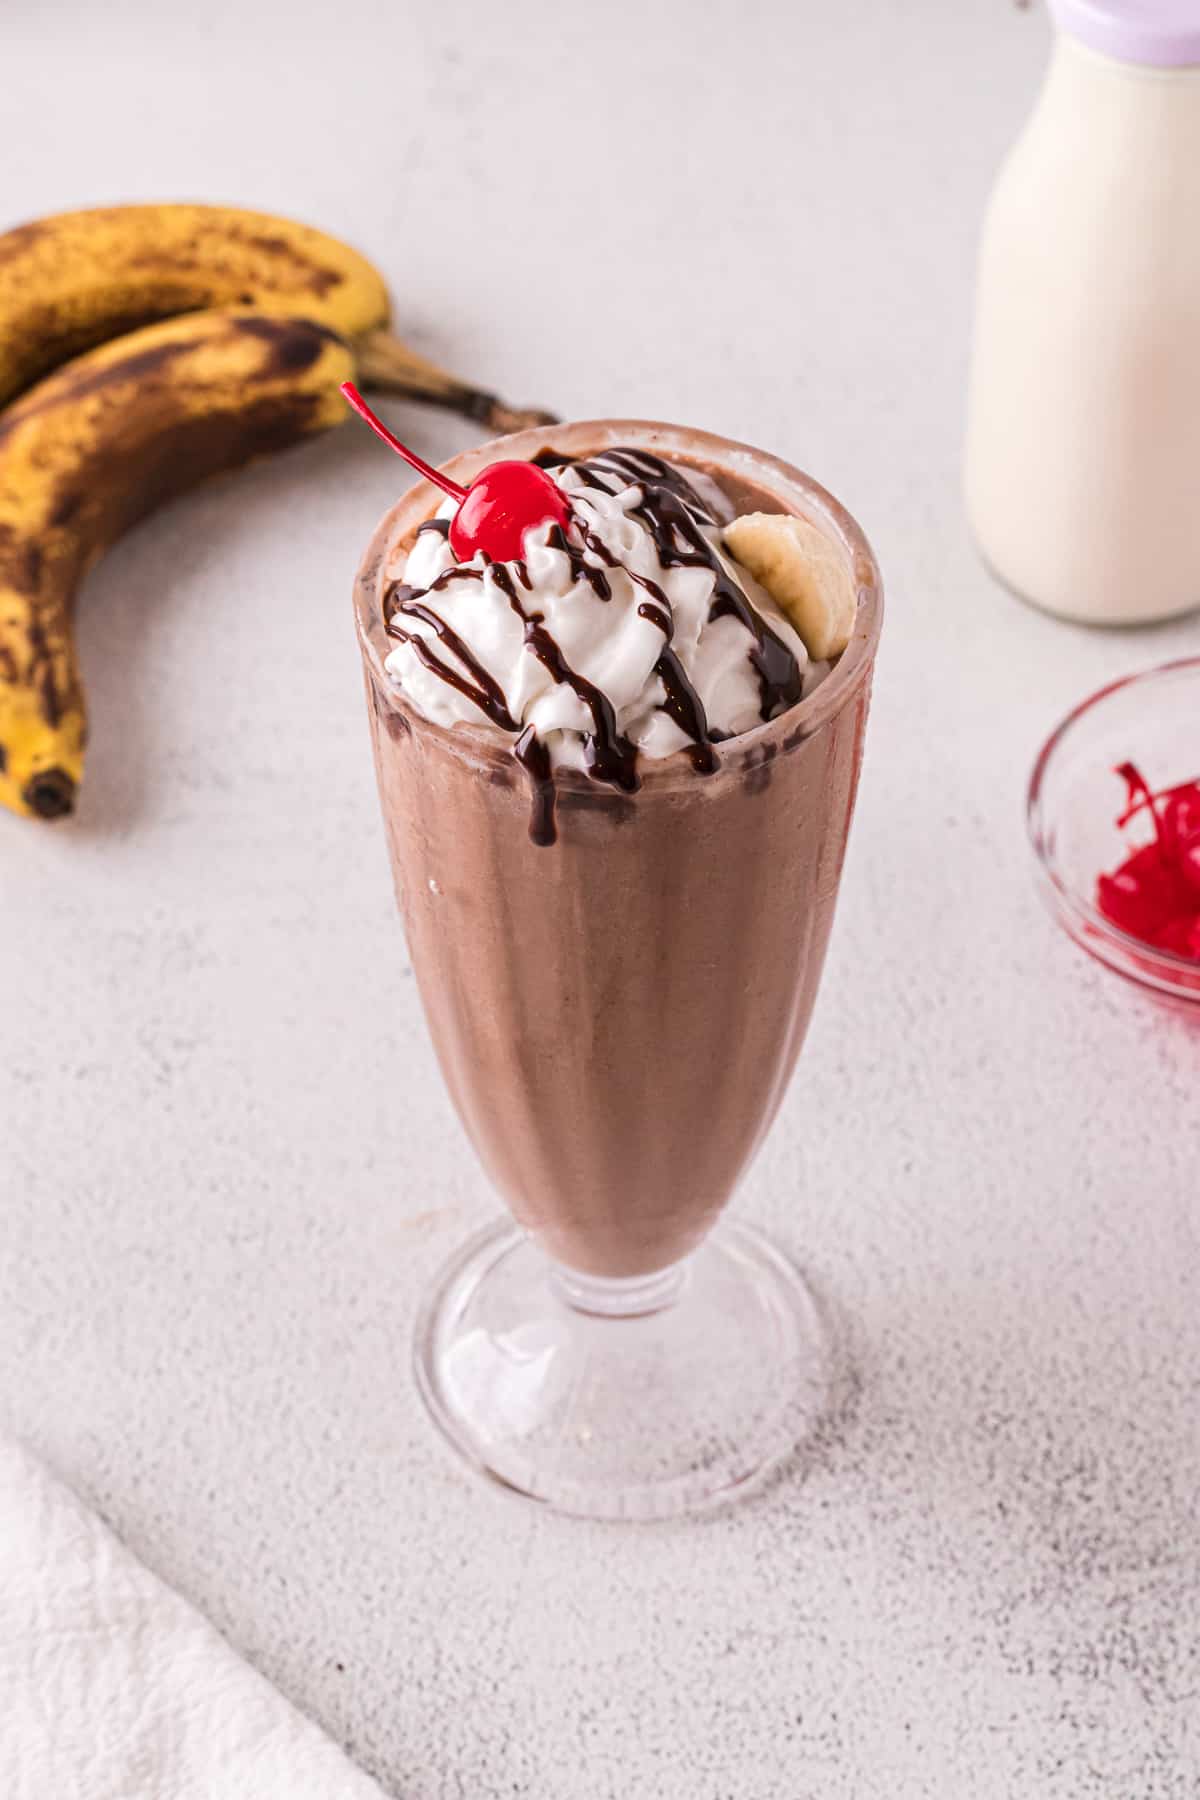 Chocolate banana milkshake with whipped cream, chocolate sauce, a cherry and banana slice.